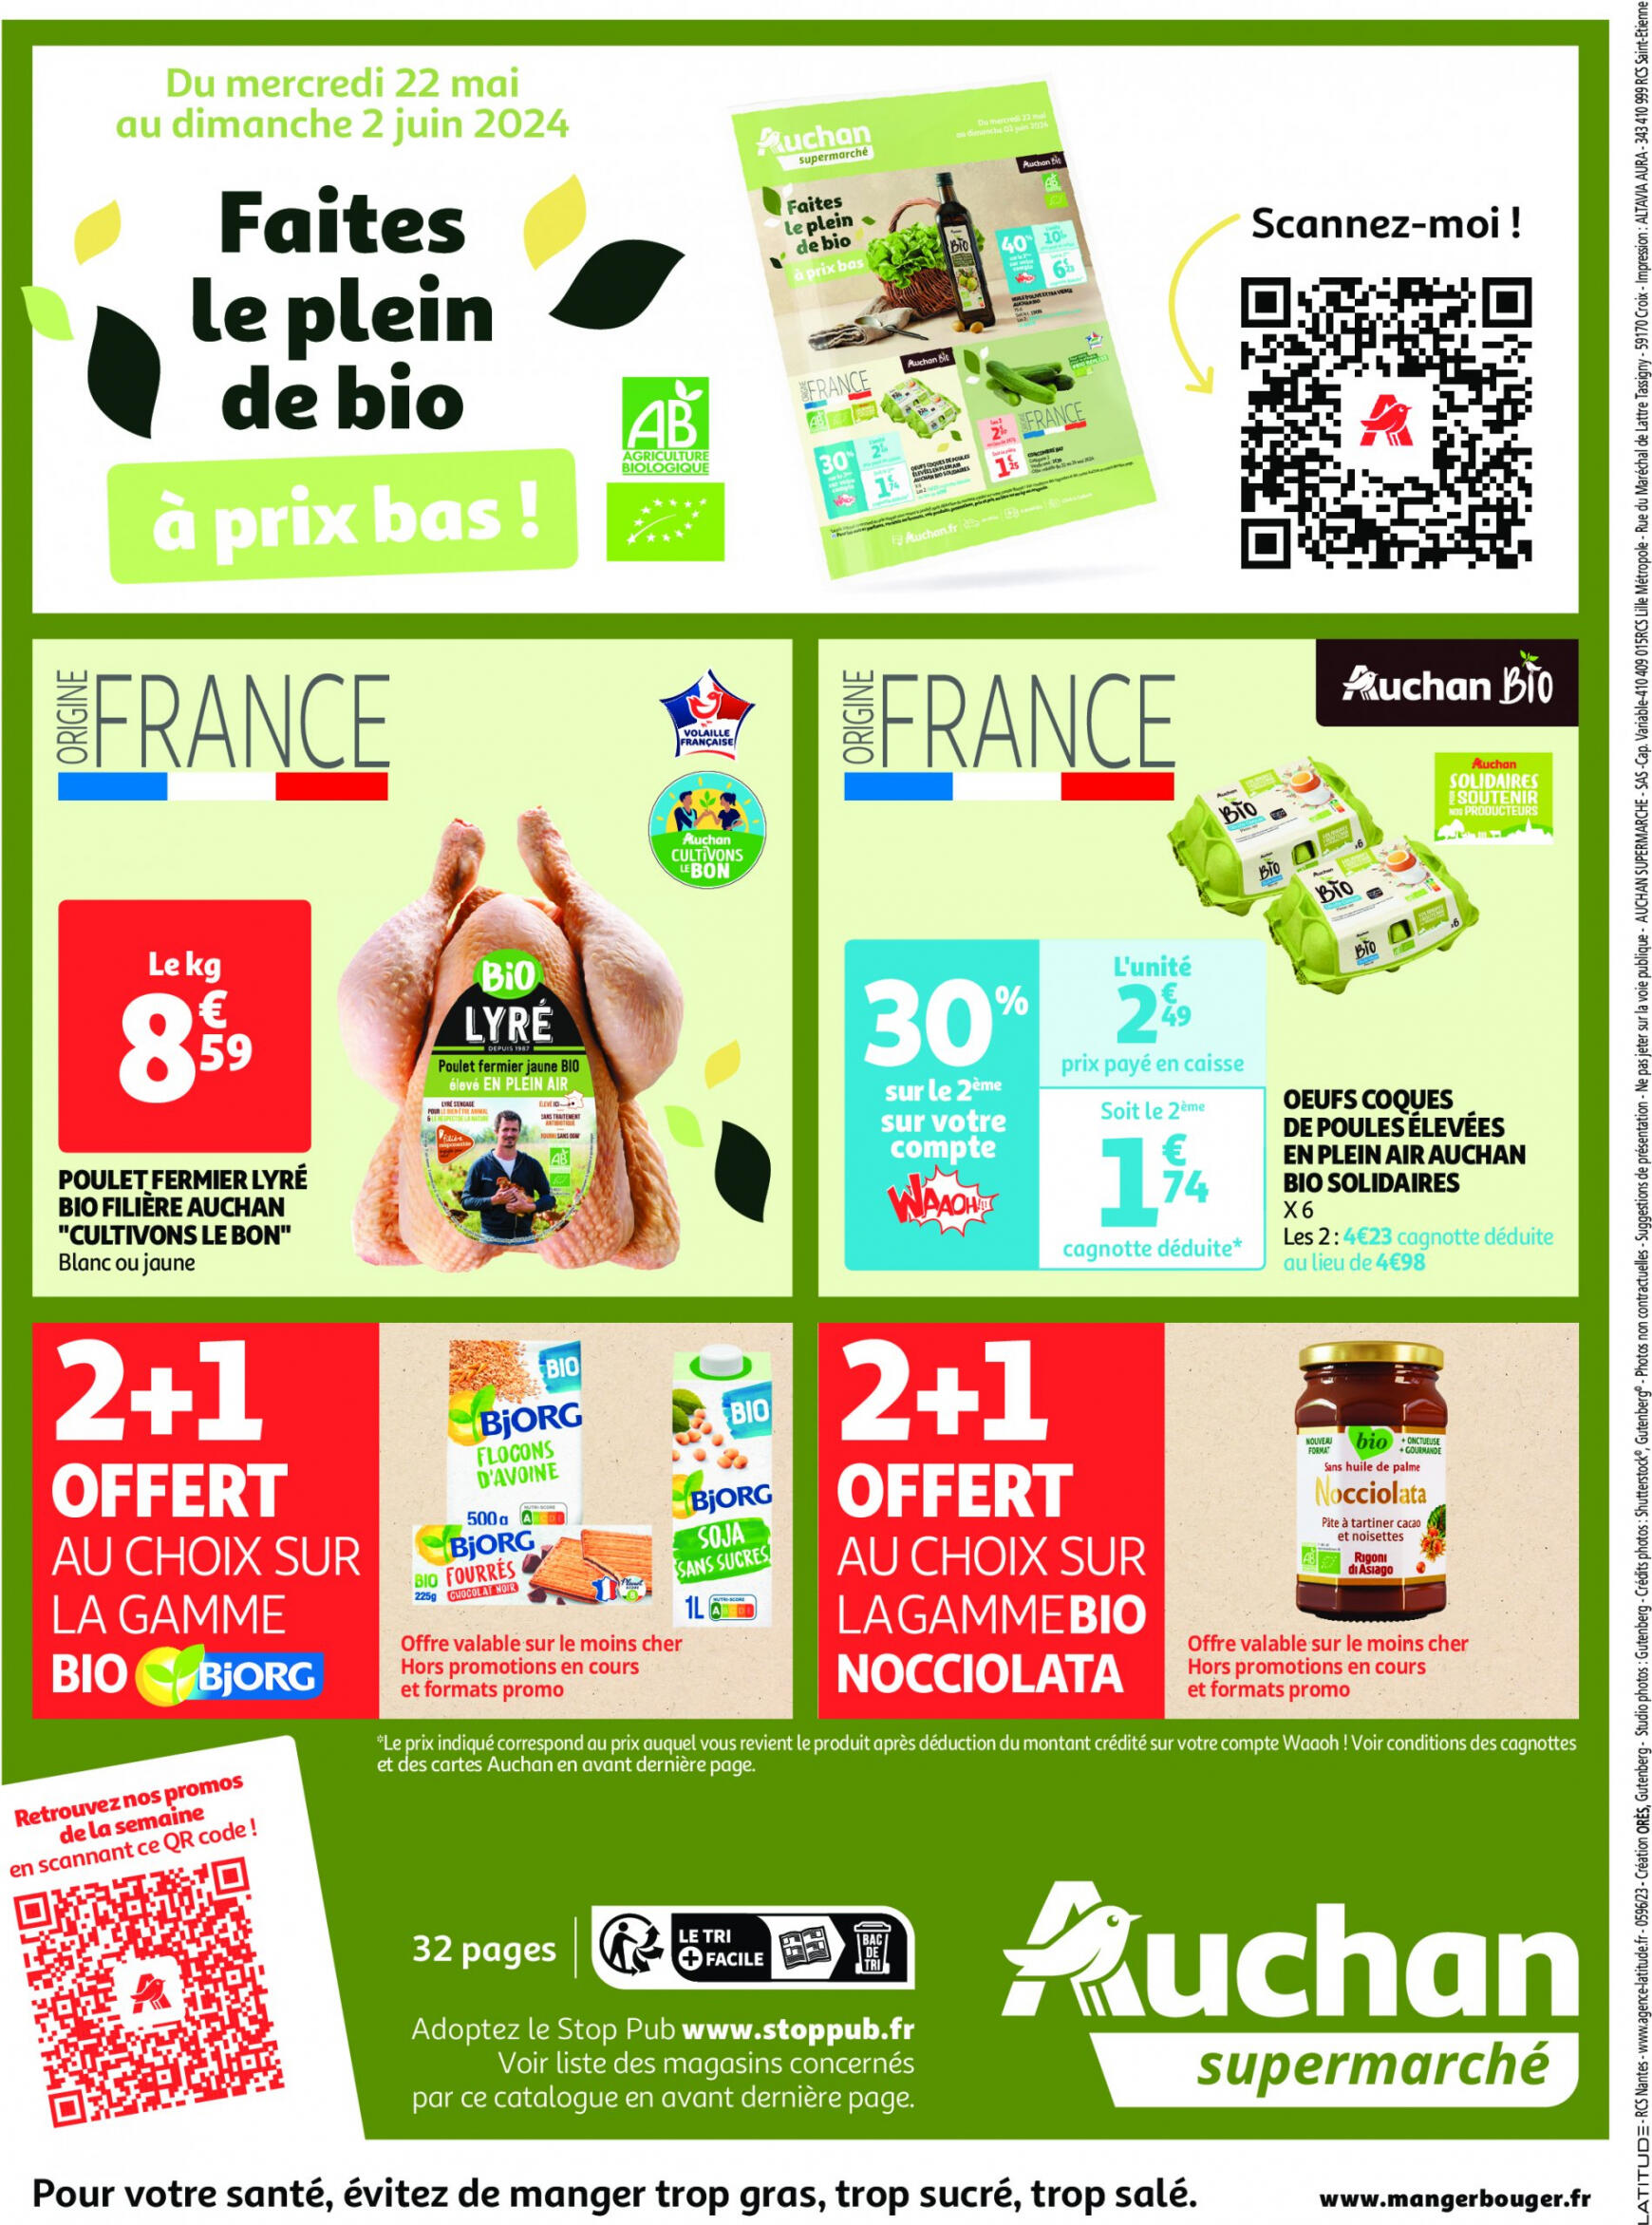 auchan - Auchan supermarché - Faites le plein de bonnes affaires folder huidig 22.05. - 26.05. - page: 32